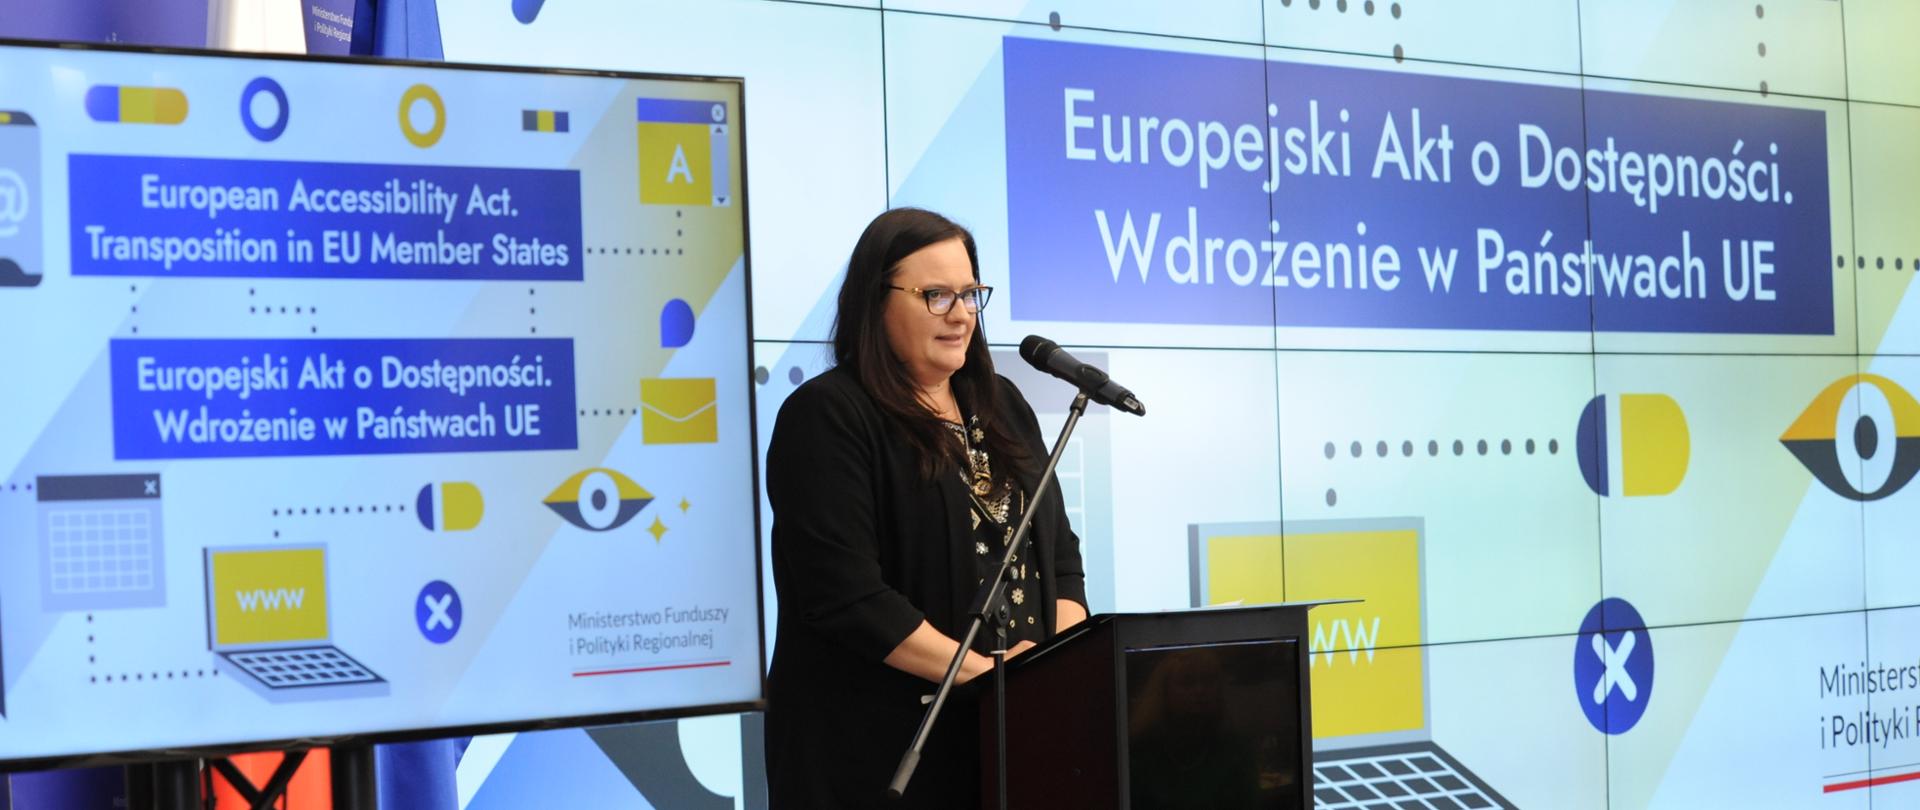 Zdjęcie przedstawia kobietę przemawiającą na konferencji związanej z wdrożeniem Europejskiego Aktu o Dostępności w państwach UE. W tle znajduje się duży ekran z napisami w języku polskim i angielskim dotyczącymi tego aktu oraz logotyp Ministerstwa Funduszy i Polityki Regionalnej. Kobieta stoi przy mównicy i mówi do mikrofonu, co sugeruje, że jest jednym z prelegentów tego wydarzenia.